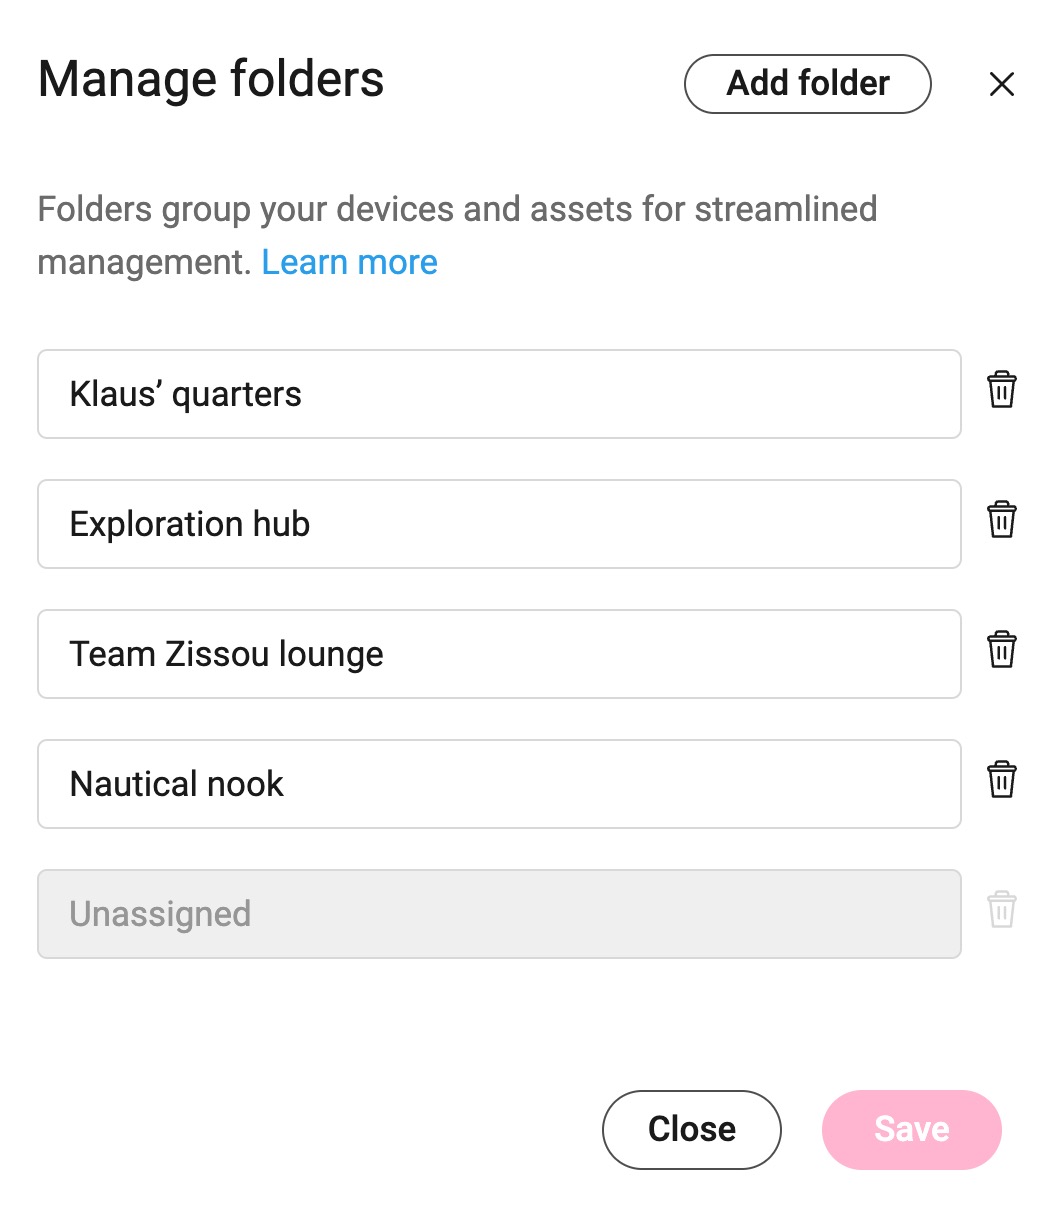 Manage folders > Add folder - EN.jpg